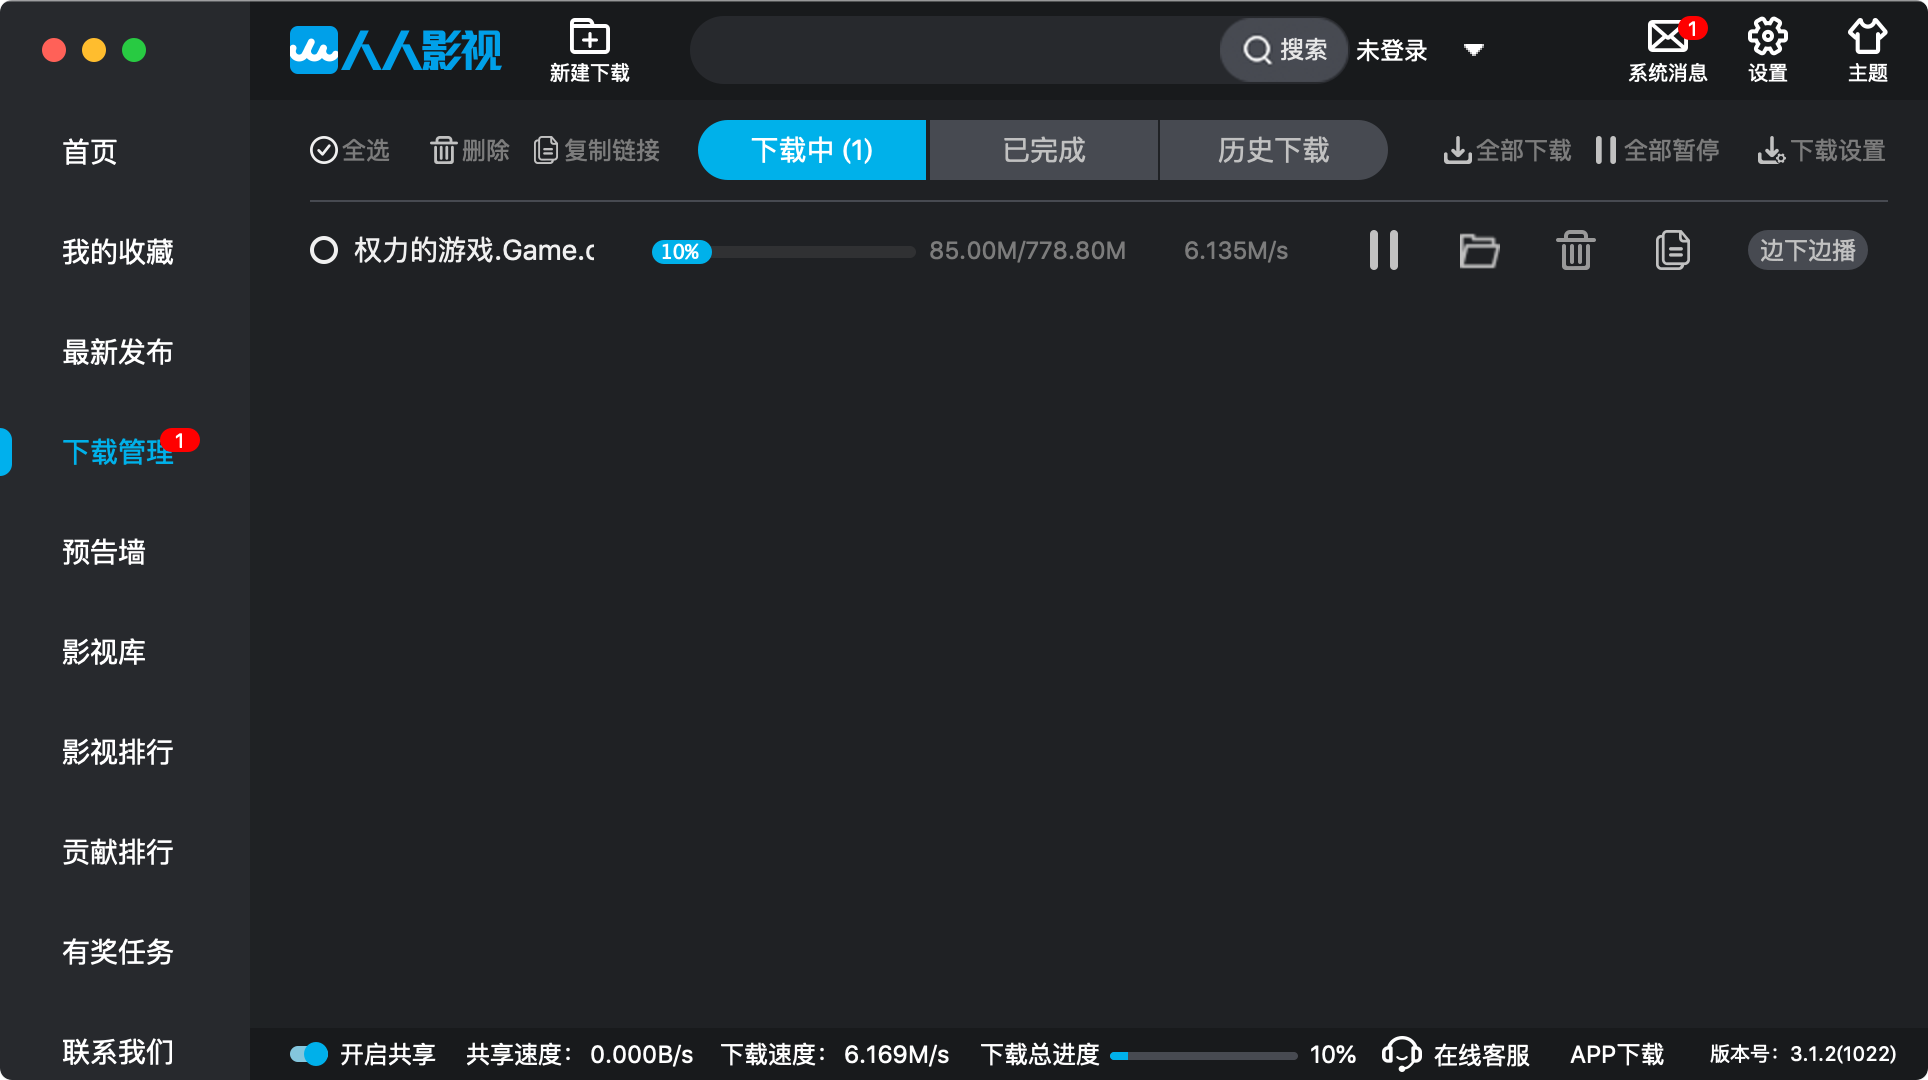 人人影视客户端 for mac 3.2.9中文版